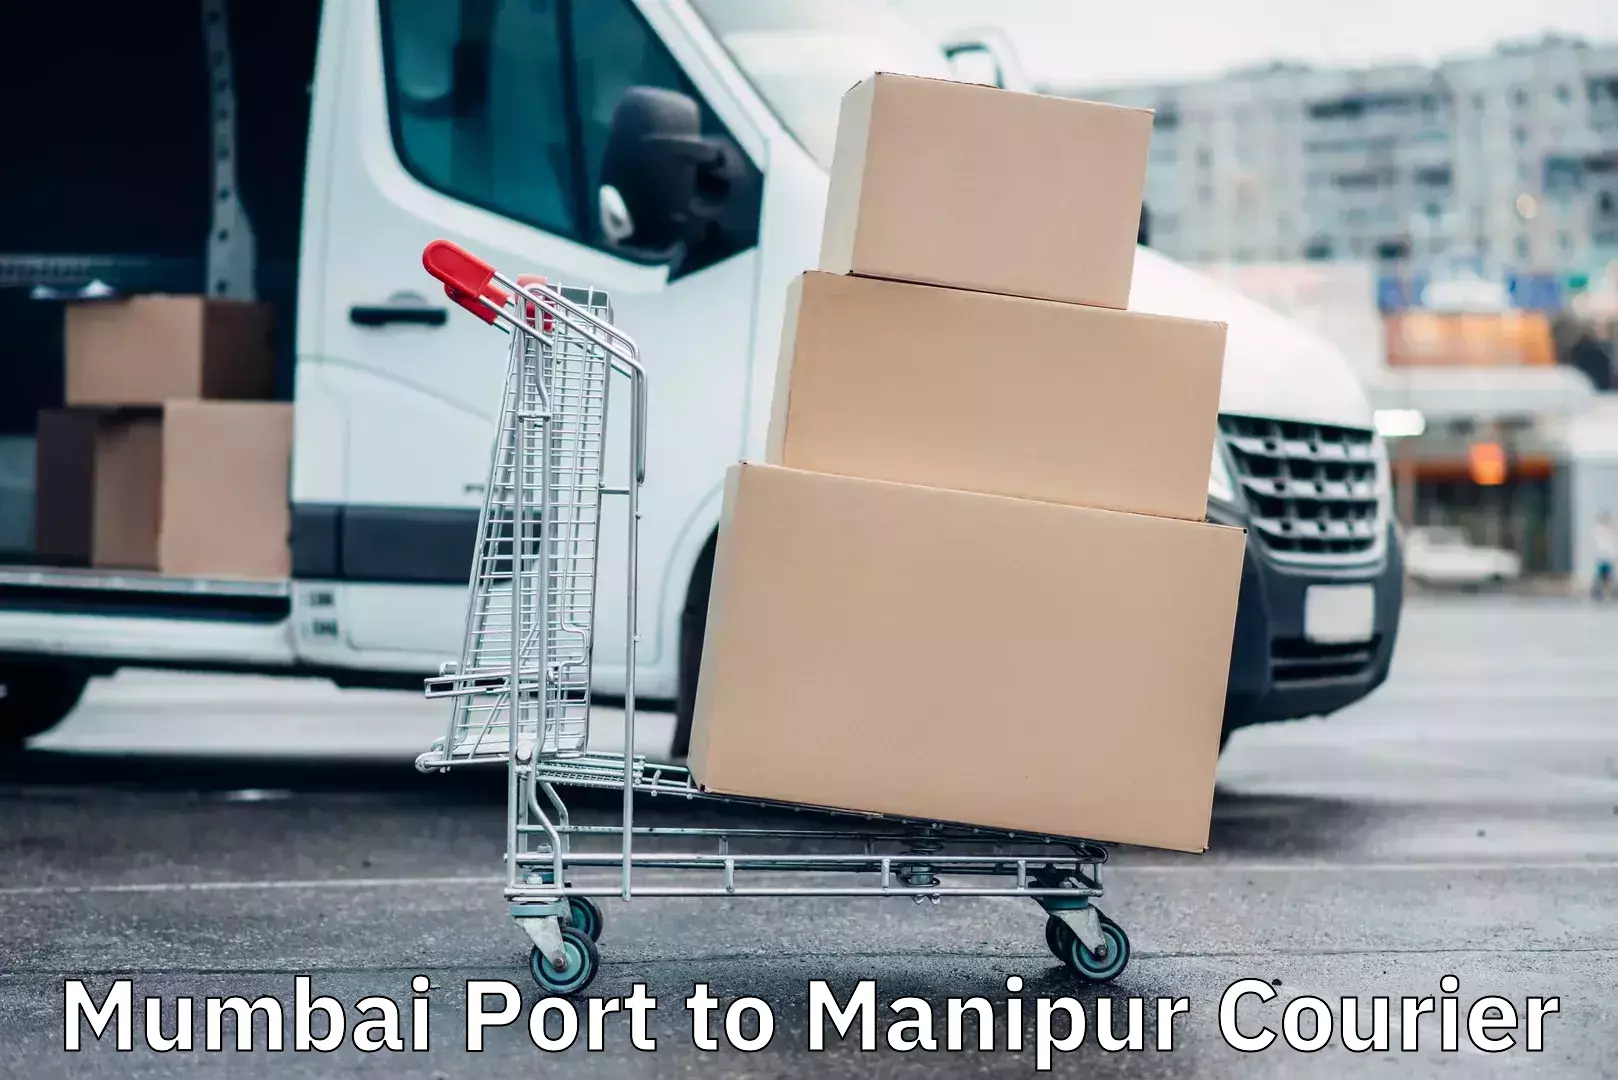 Smart shipping technology Mumbai Port to Ukhrul